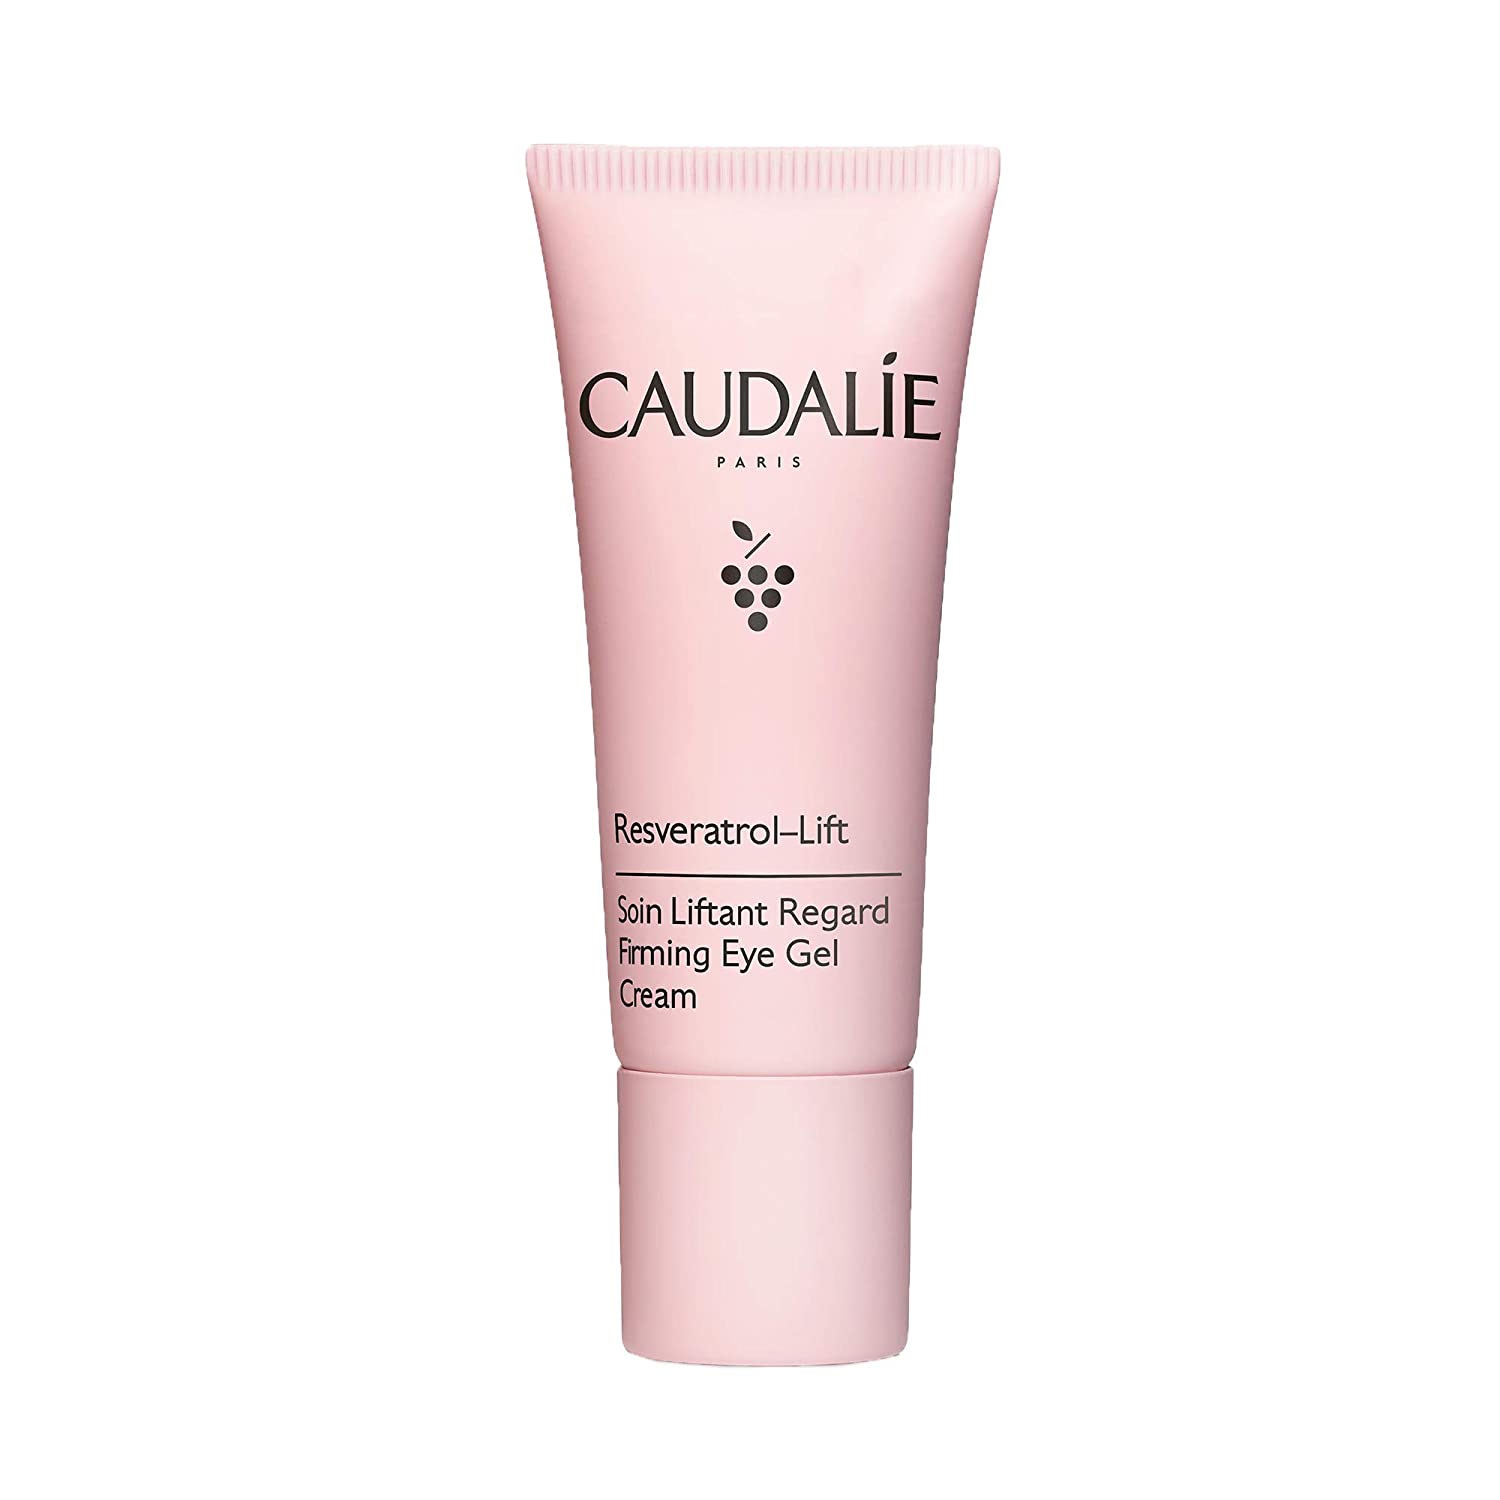 Caudalie Resveratrol-Lift Firming Eye Gel Cream (15ml)